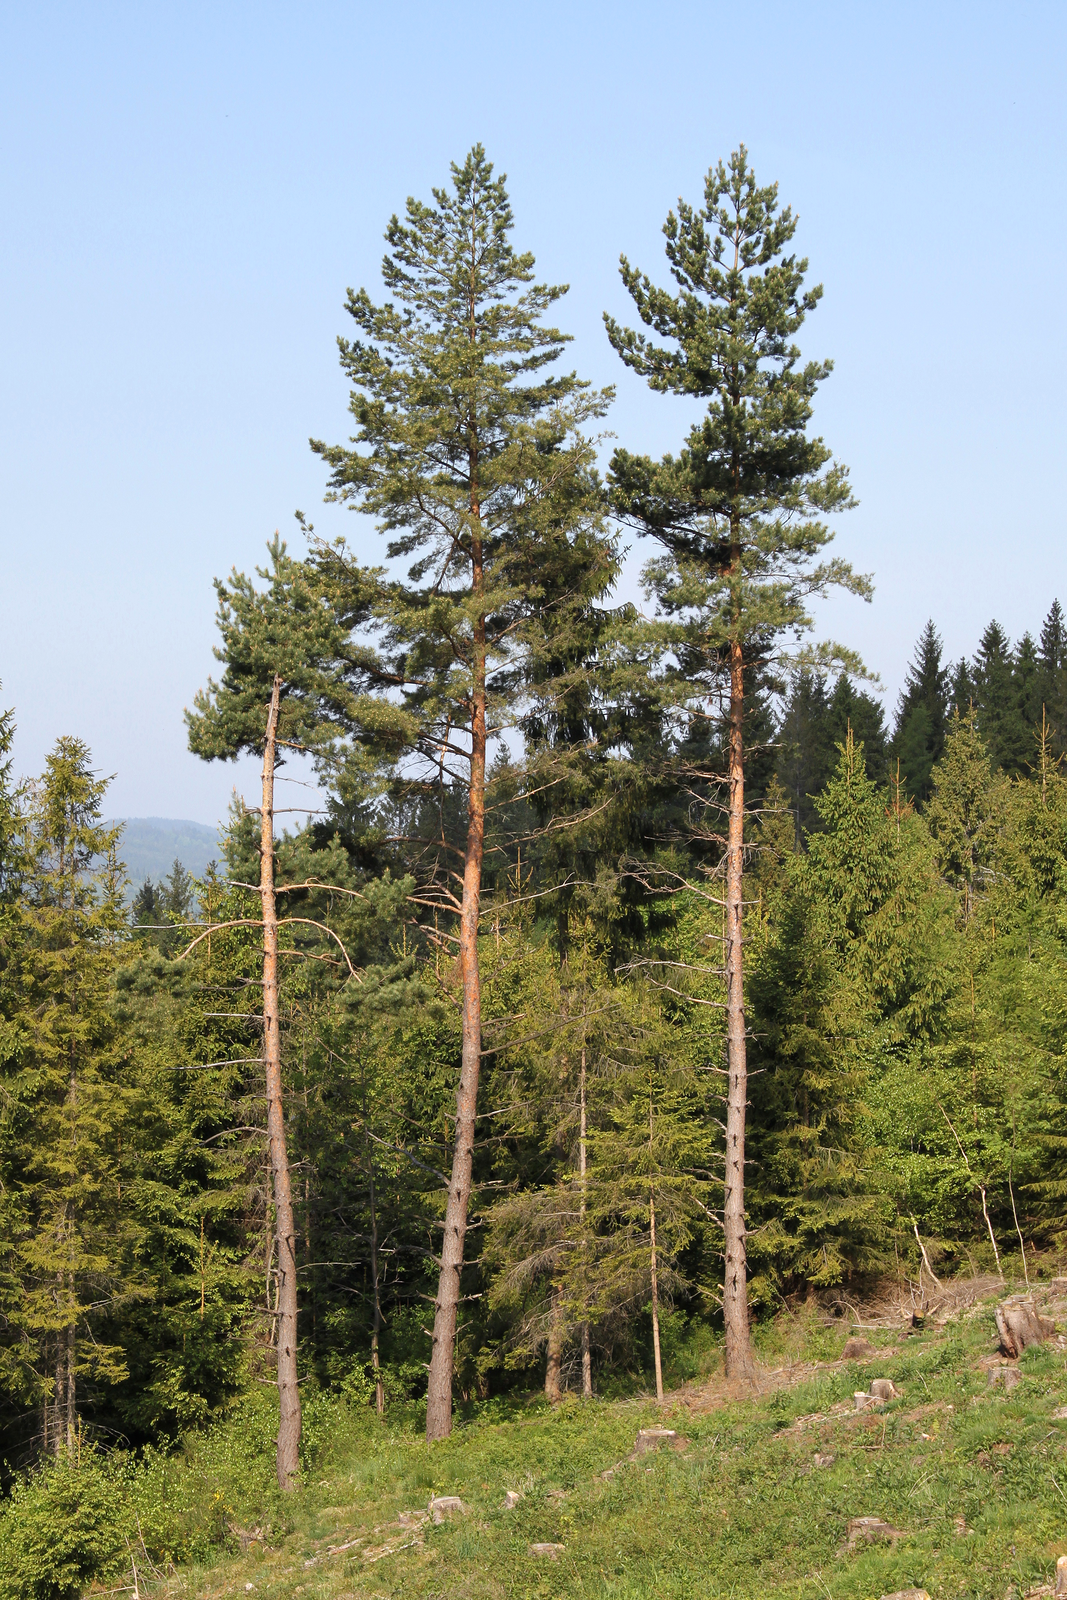 Zdjęcie przedstawiające sosny na skraju lasu. Drzewa mają wąskie, wysokie, brązowe pnie. Pnie są pozbawione gałezi na dole. Gałezie wyrastają w górnej części pnia. Gałęzie są rozmieszczone rzadko i podłoże pod drzewami jest oświetlone.